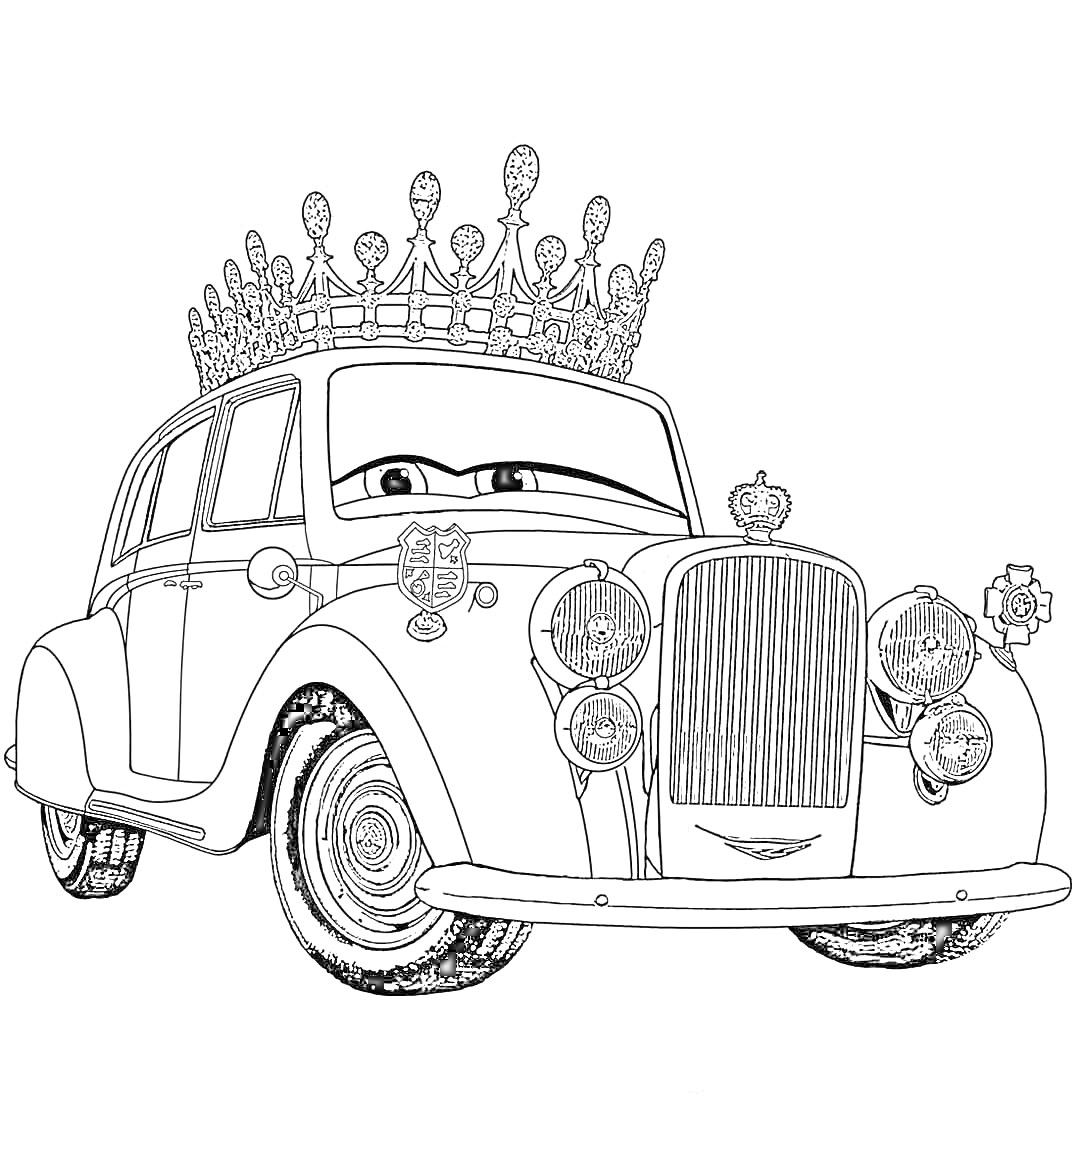 Машина с короной и глазами, большое ветровое стекло, классический автомобиль с деталями и эмблемами